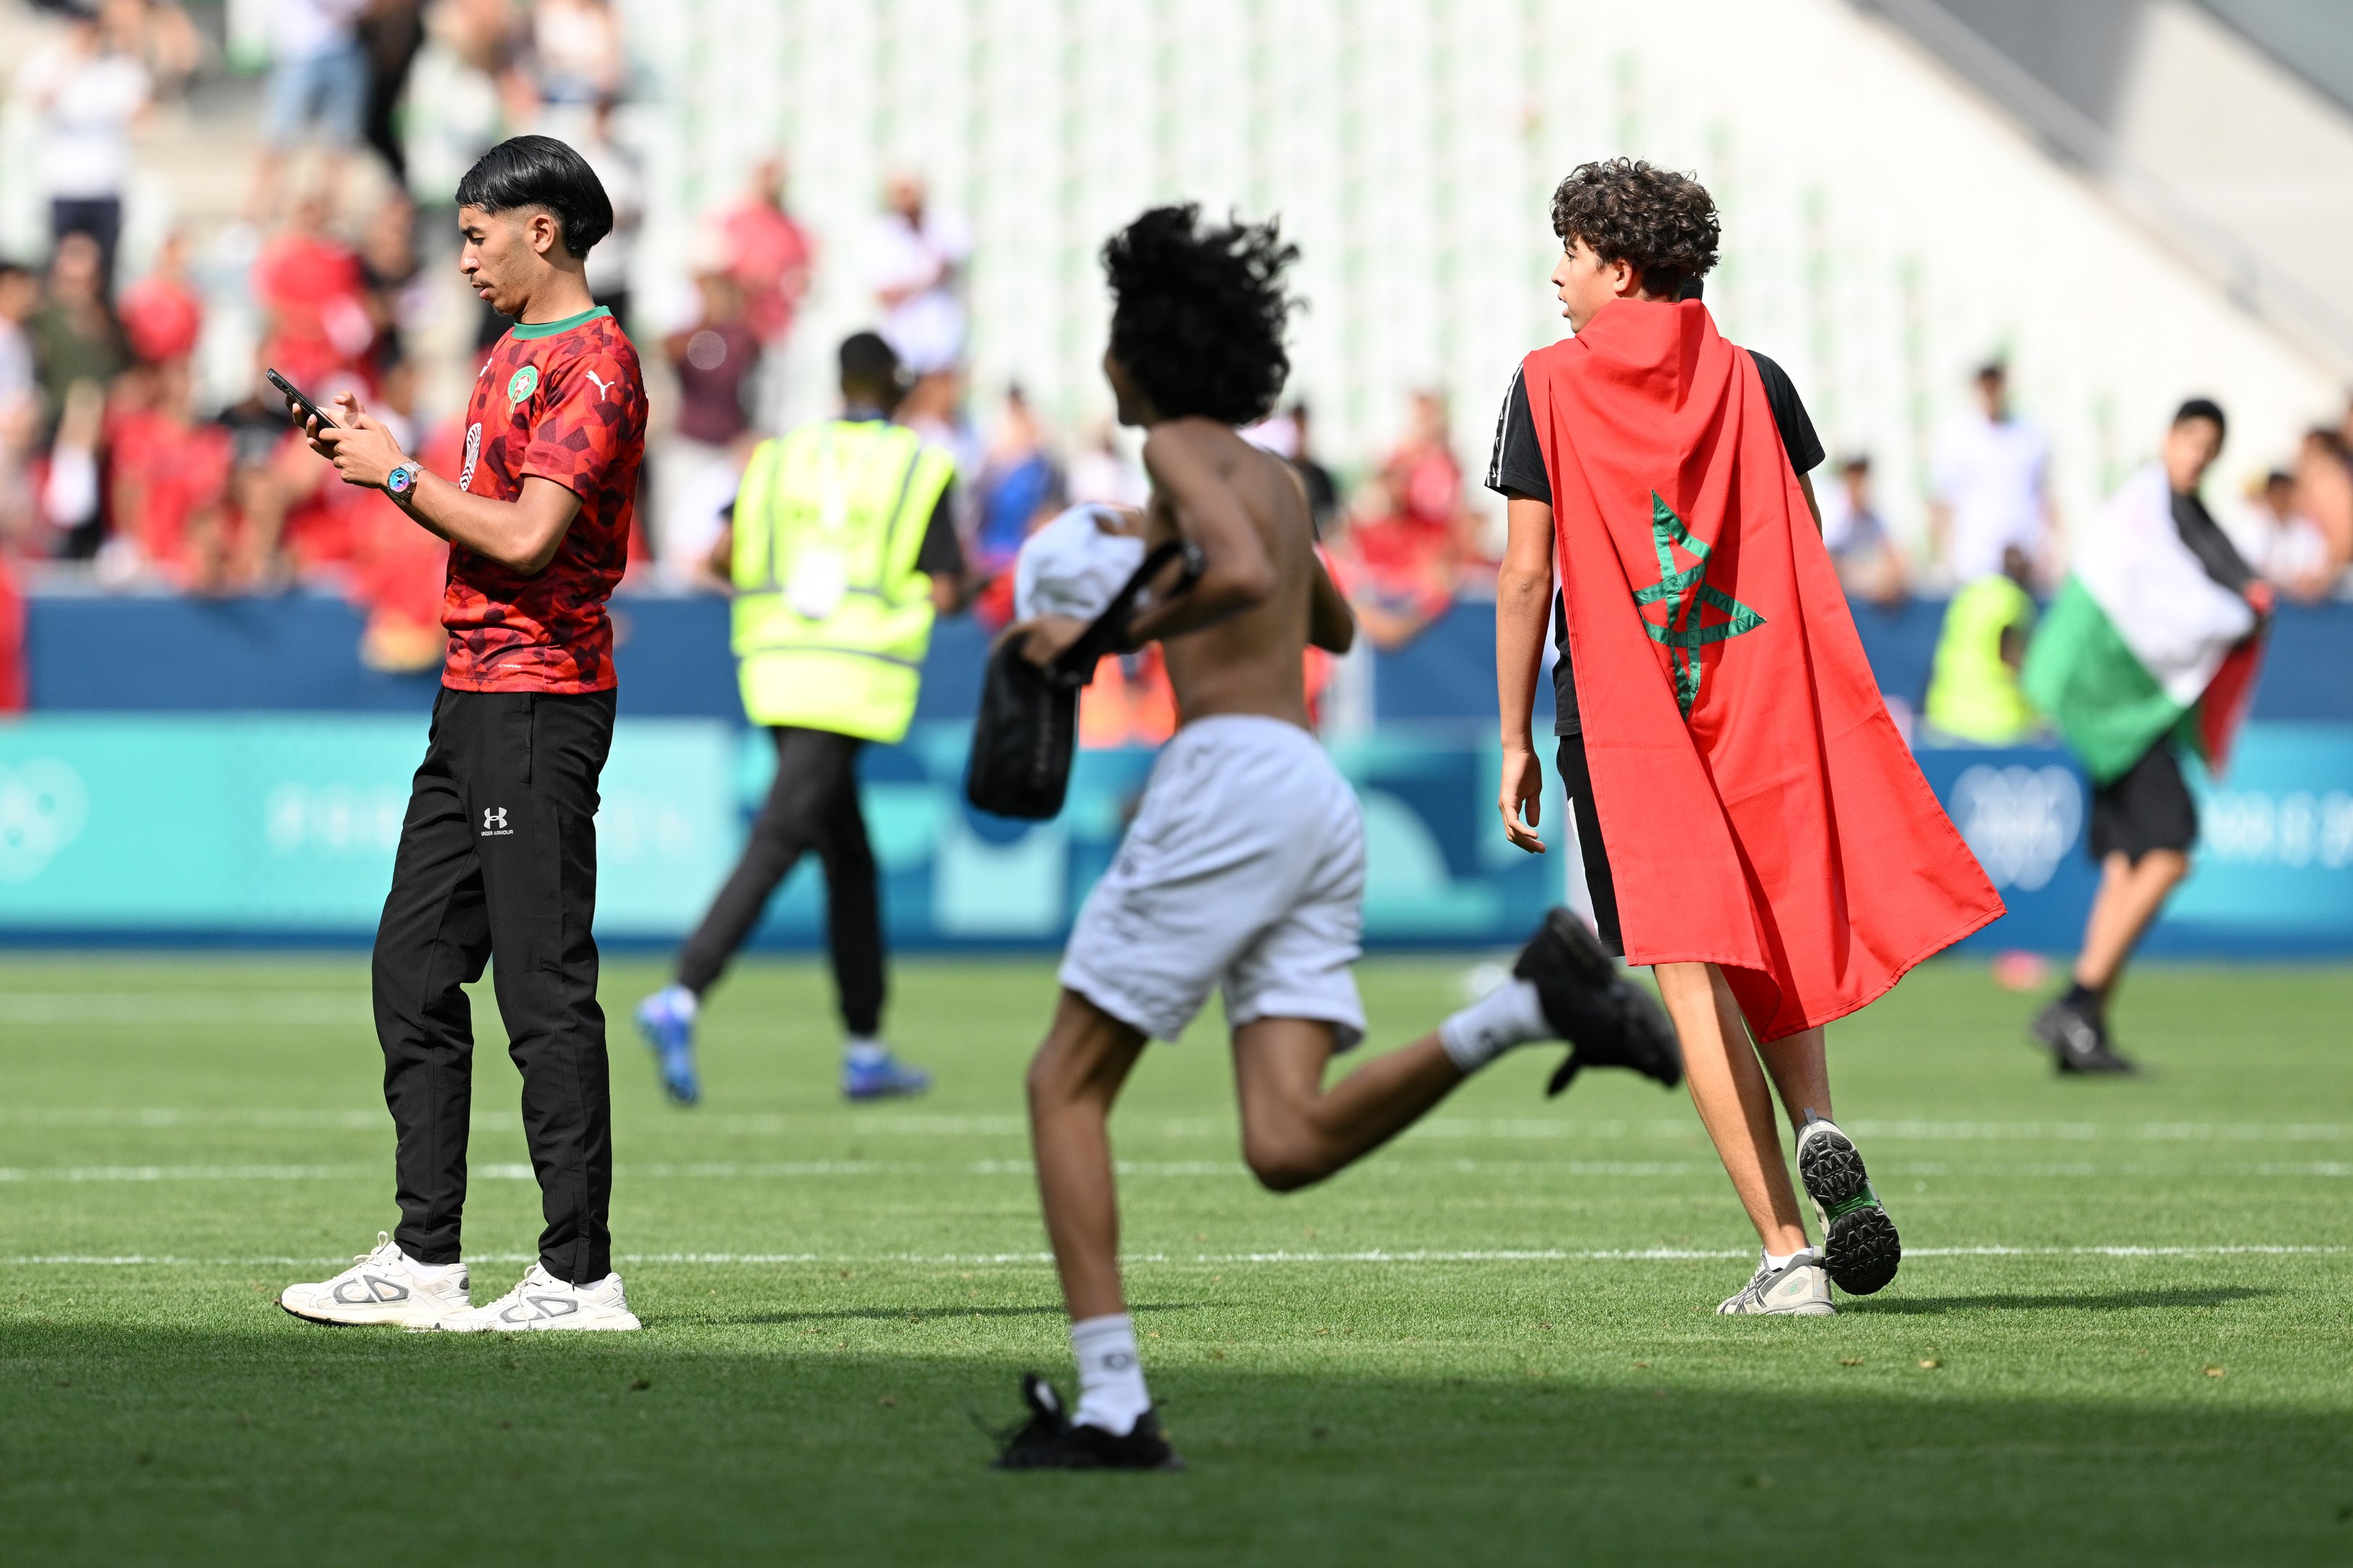 Torcedores do Marrocos invadem o campo durante a partida do grupo B masculino entre Argentina e Marrocos durante os Jogos Olímpicos de Paris 2024 no Stade Geoffroy-Guichard em 24 de julho de 2024 em Saint-Etienne, França.